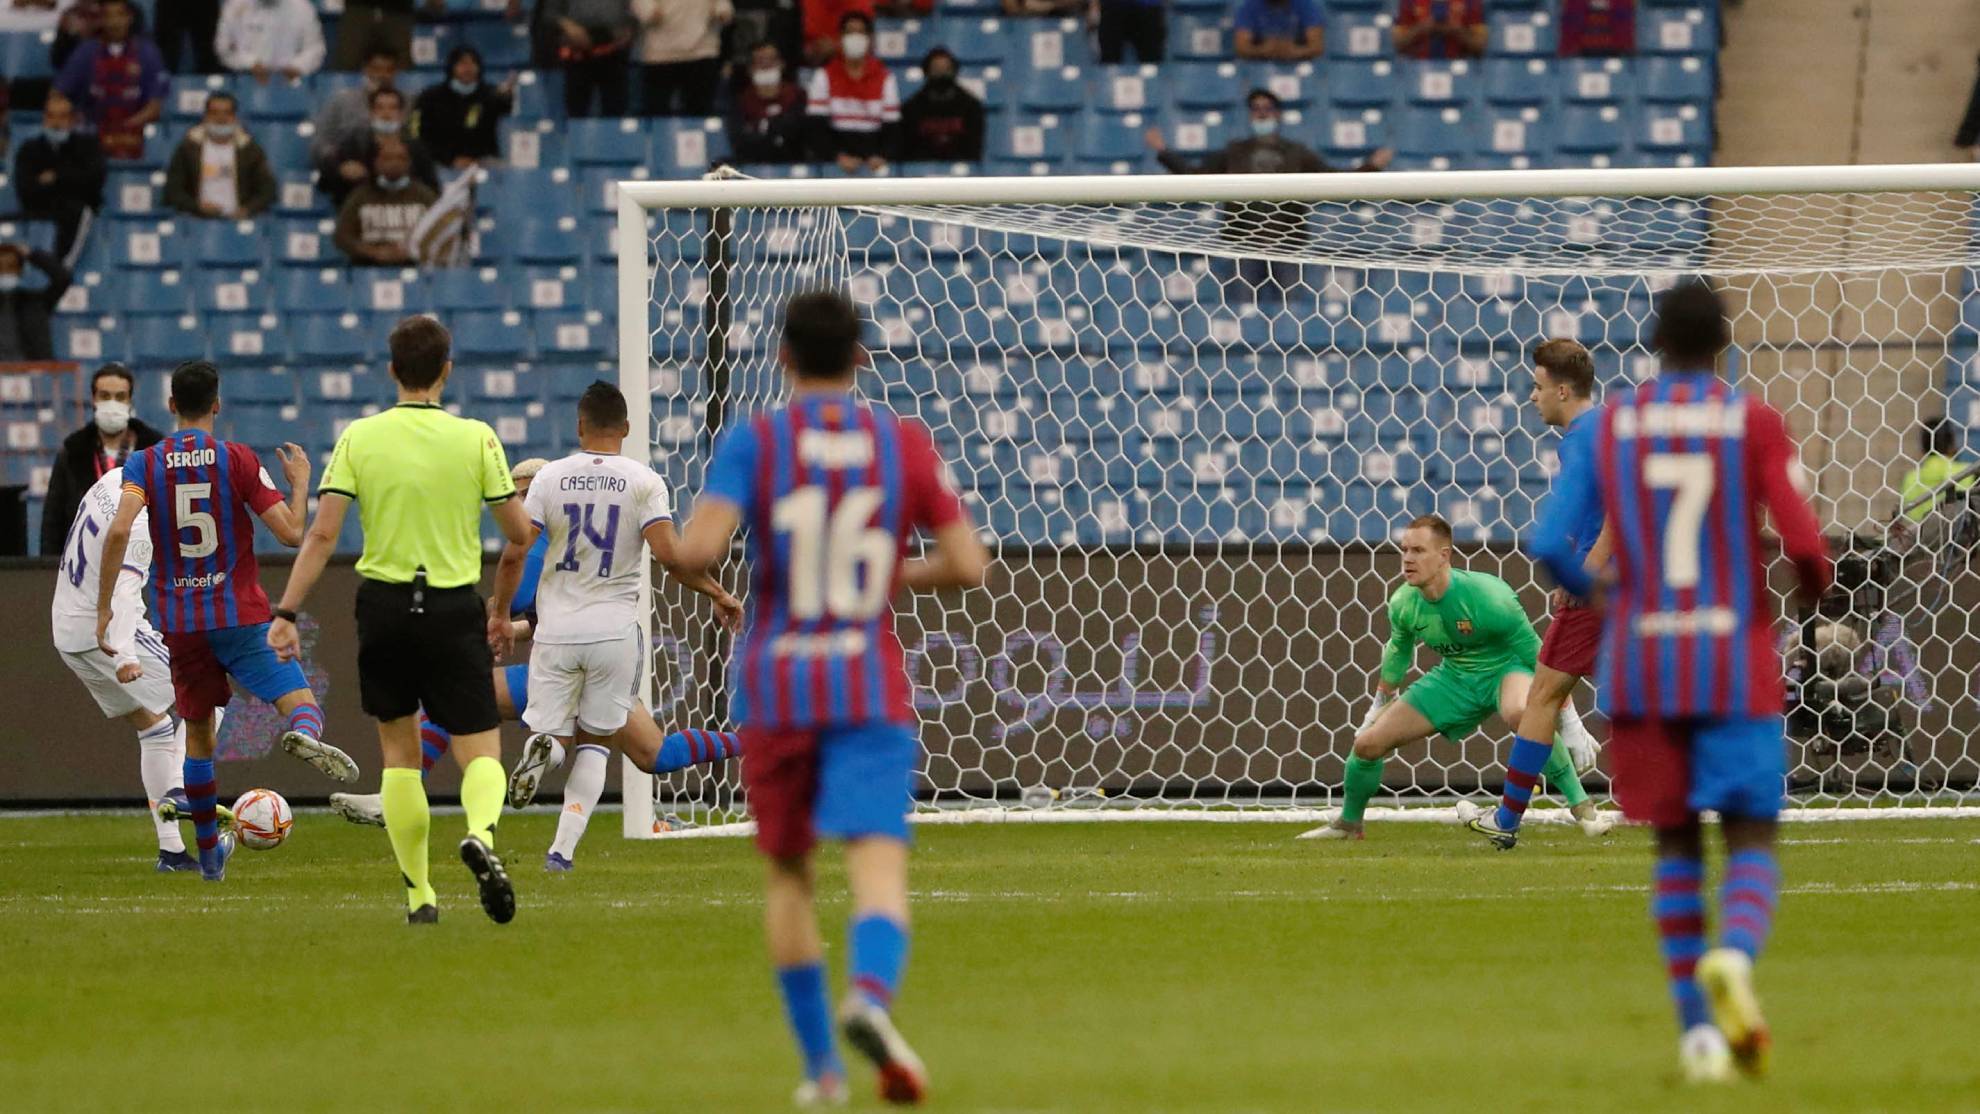 Valverde remacha la contra definitiva en la prórroga que da el triunfo al Real Madrid